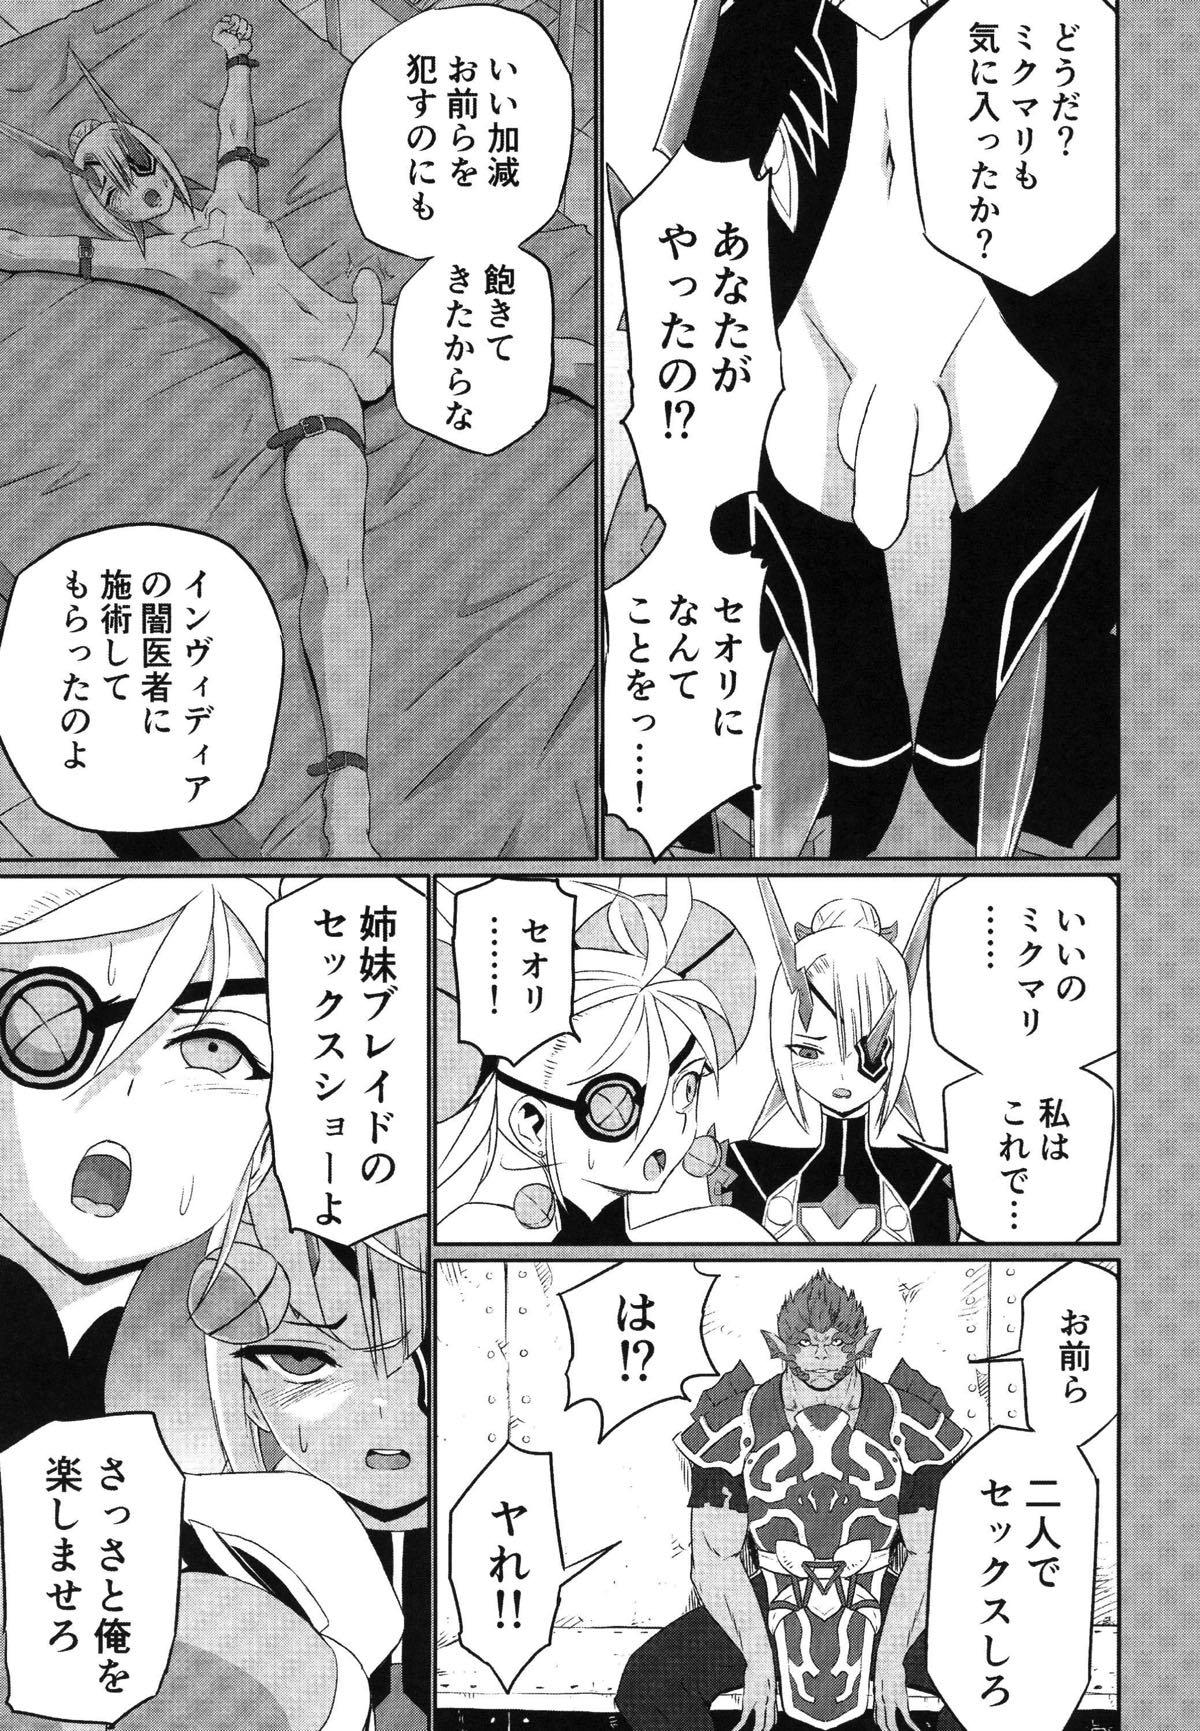 Ass Licking Xenoblade 2 - Natsu no Rakuen Niji Sousaku Goudoushi - Xenoblade chronicles 2 Bubblebutt - Page 10